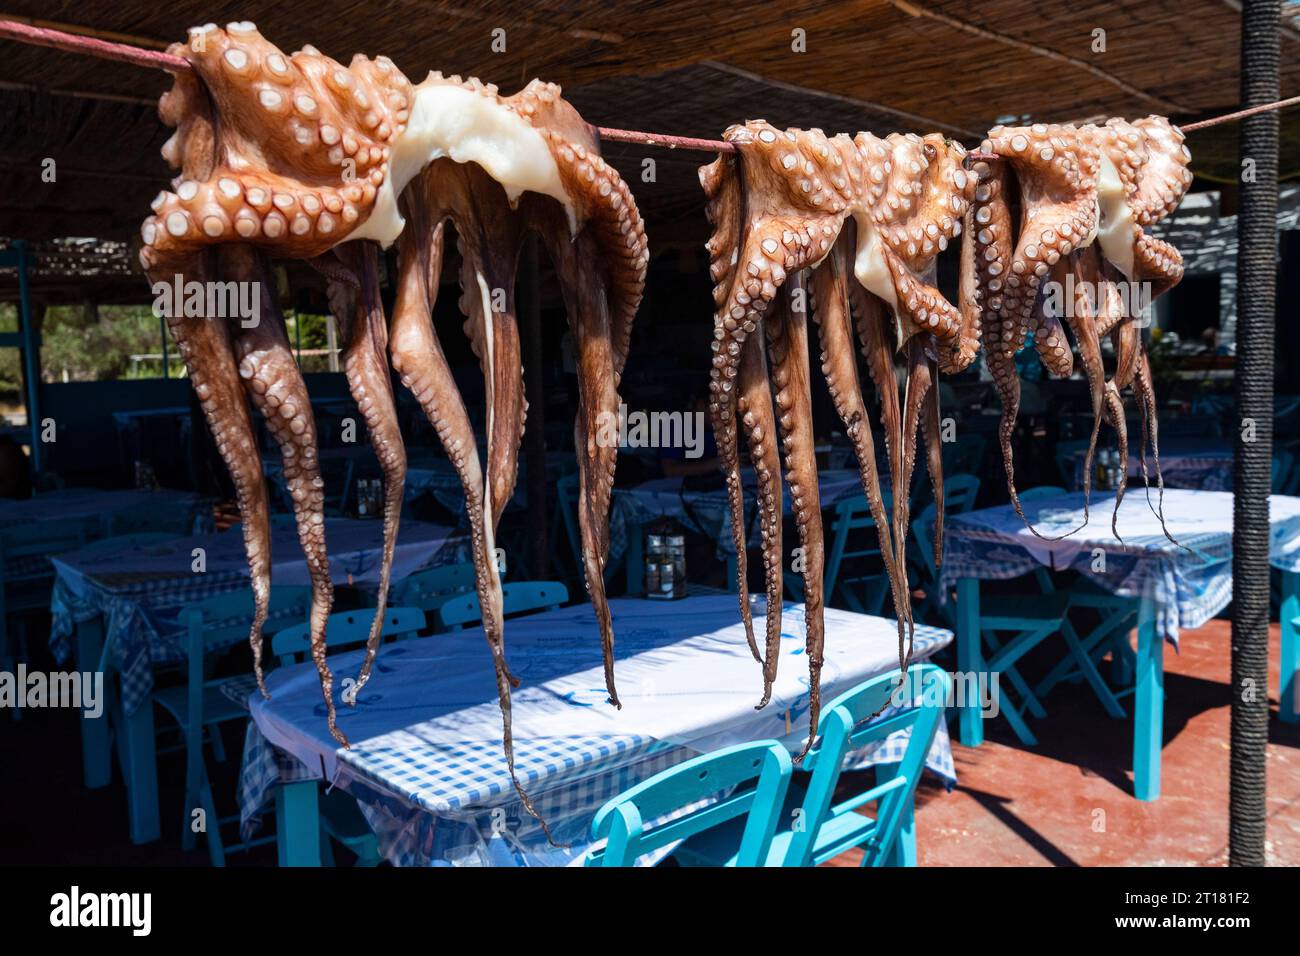 Tintenfisch, Oktopus (Octopus vulgaris) trocknet in der Sonne in einem Restaurant, Rhodos, Griechenland Stock Photo